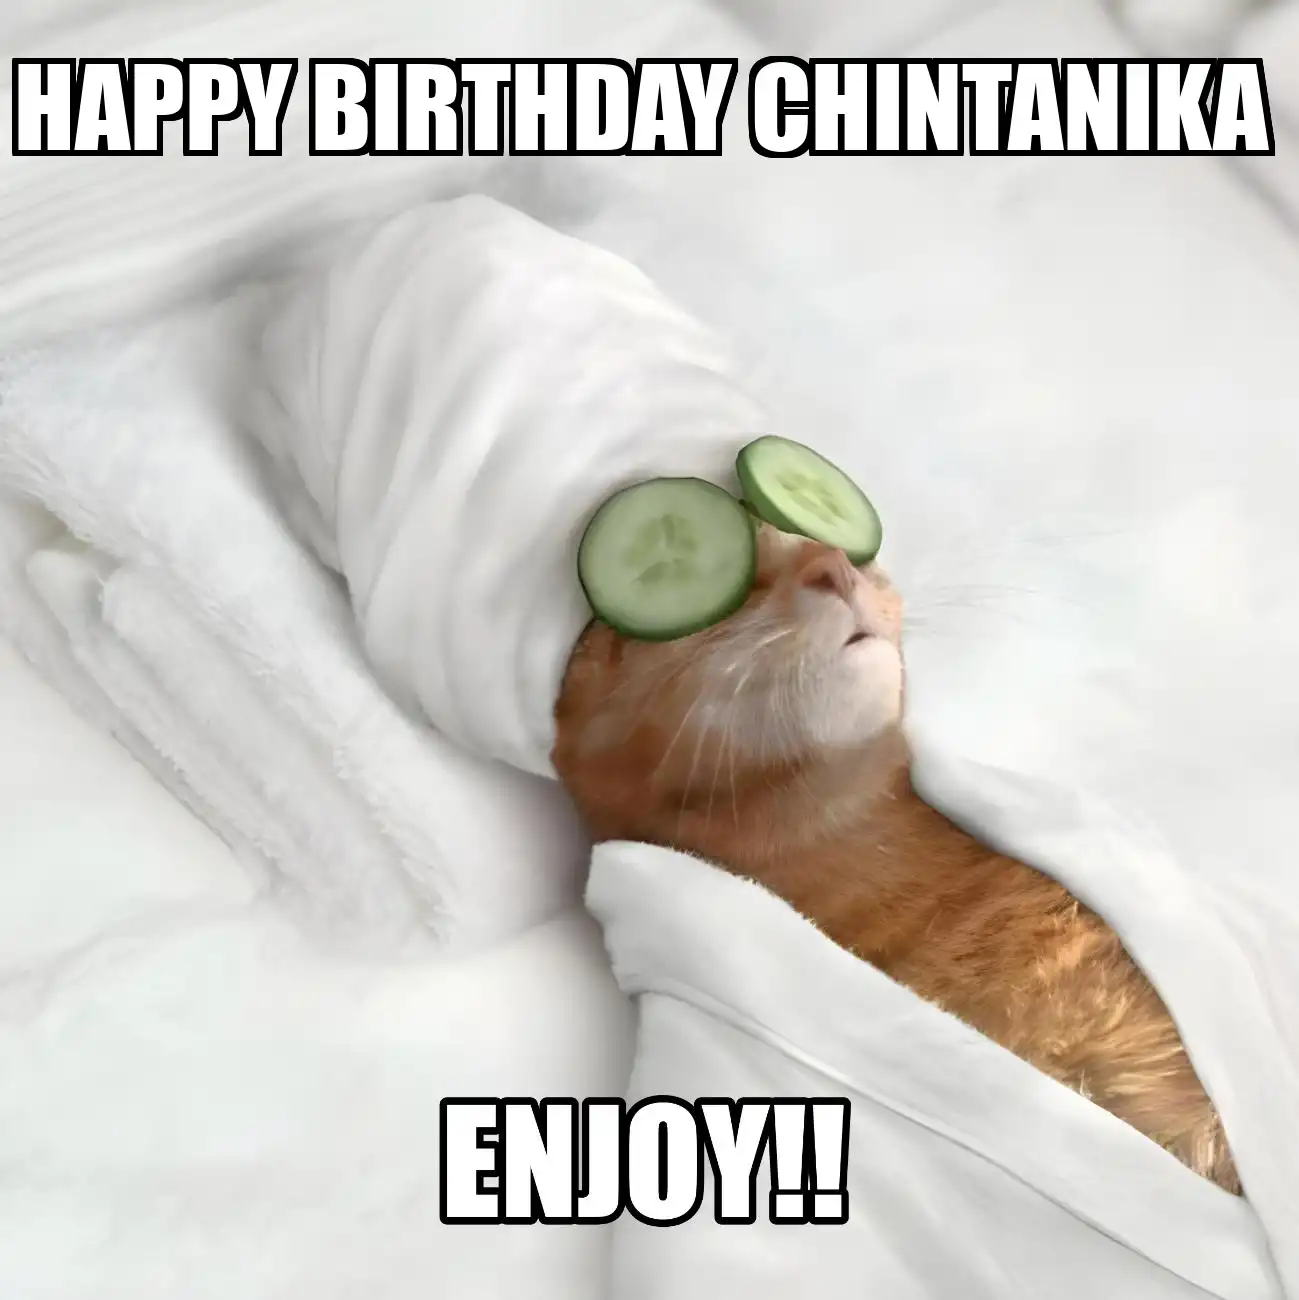 Happy Birthday Chintanika Enjoy Cat Meme